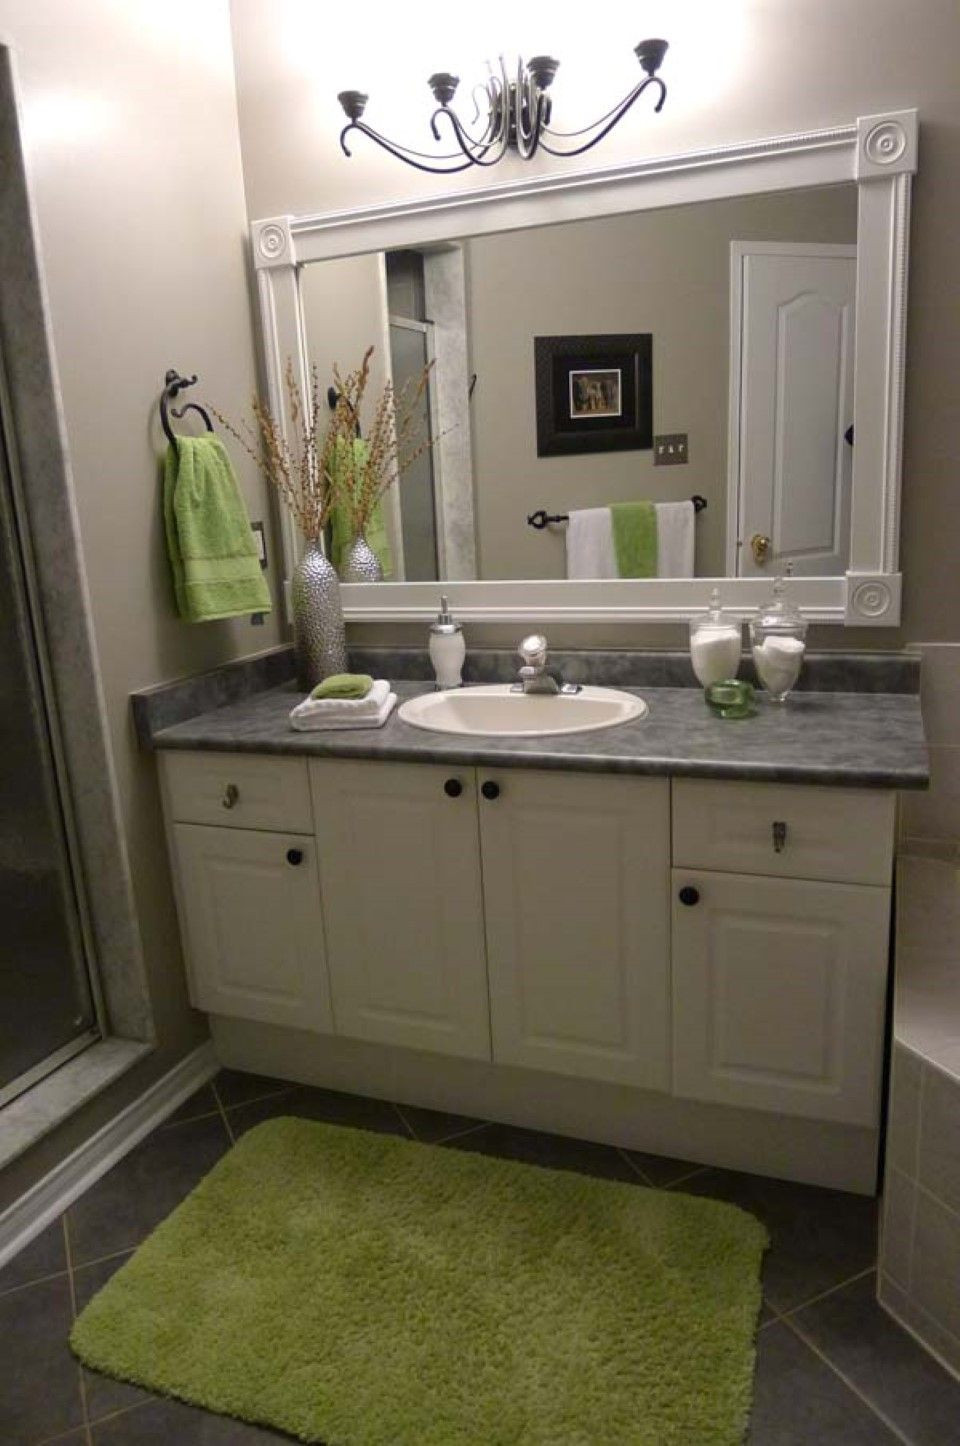 White Framed Bathroom Mirrors
 Bathroom Small Green Rug Black Ceramic Floor Tile